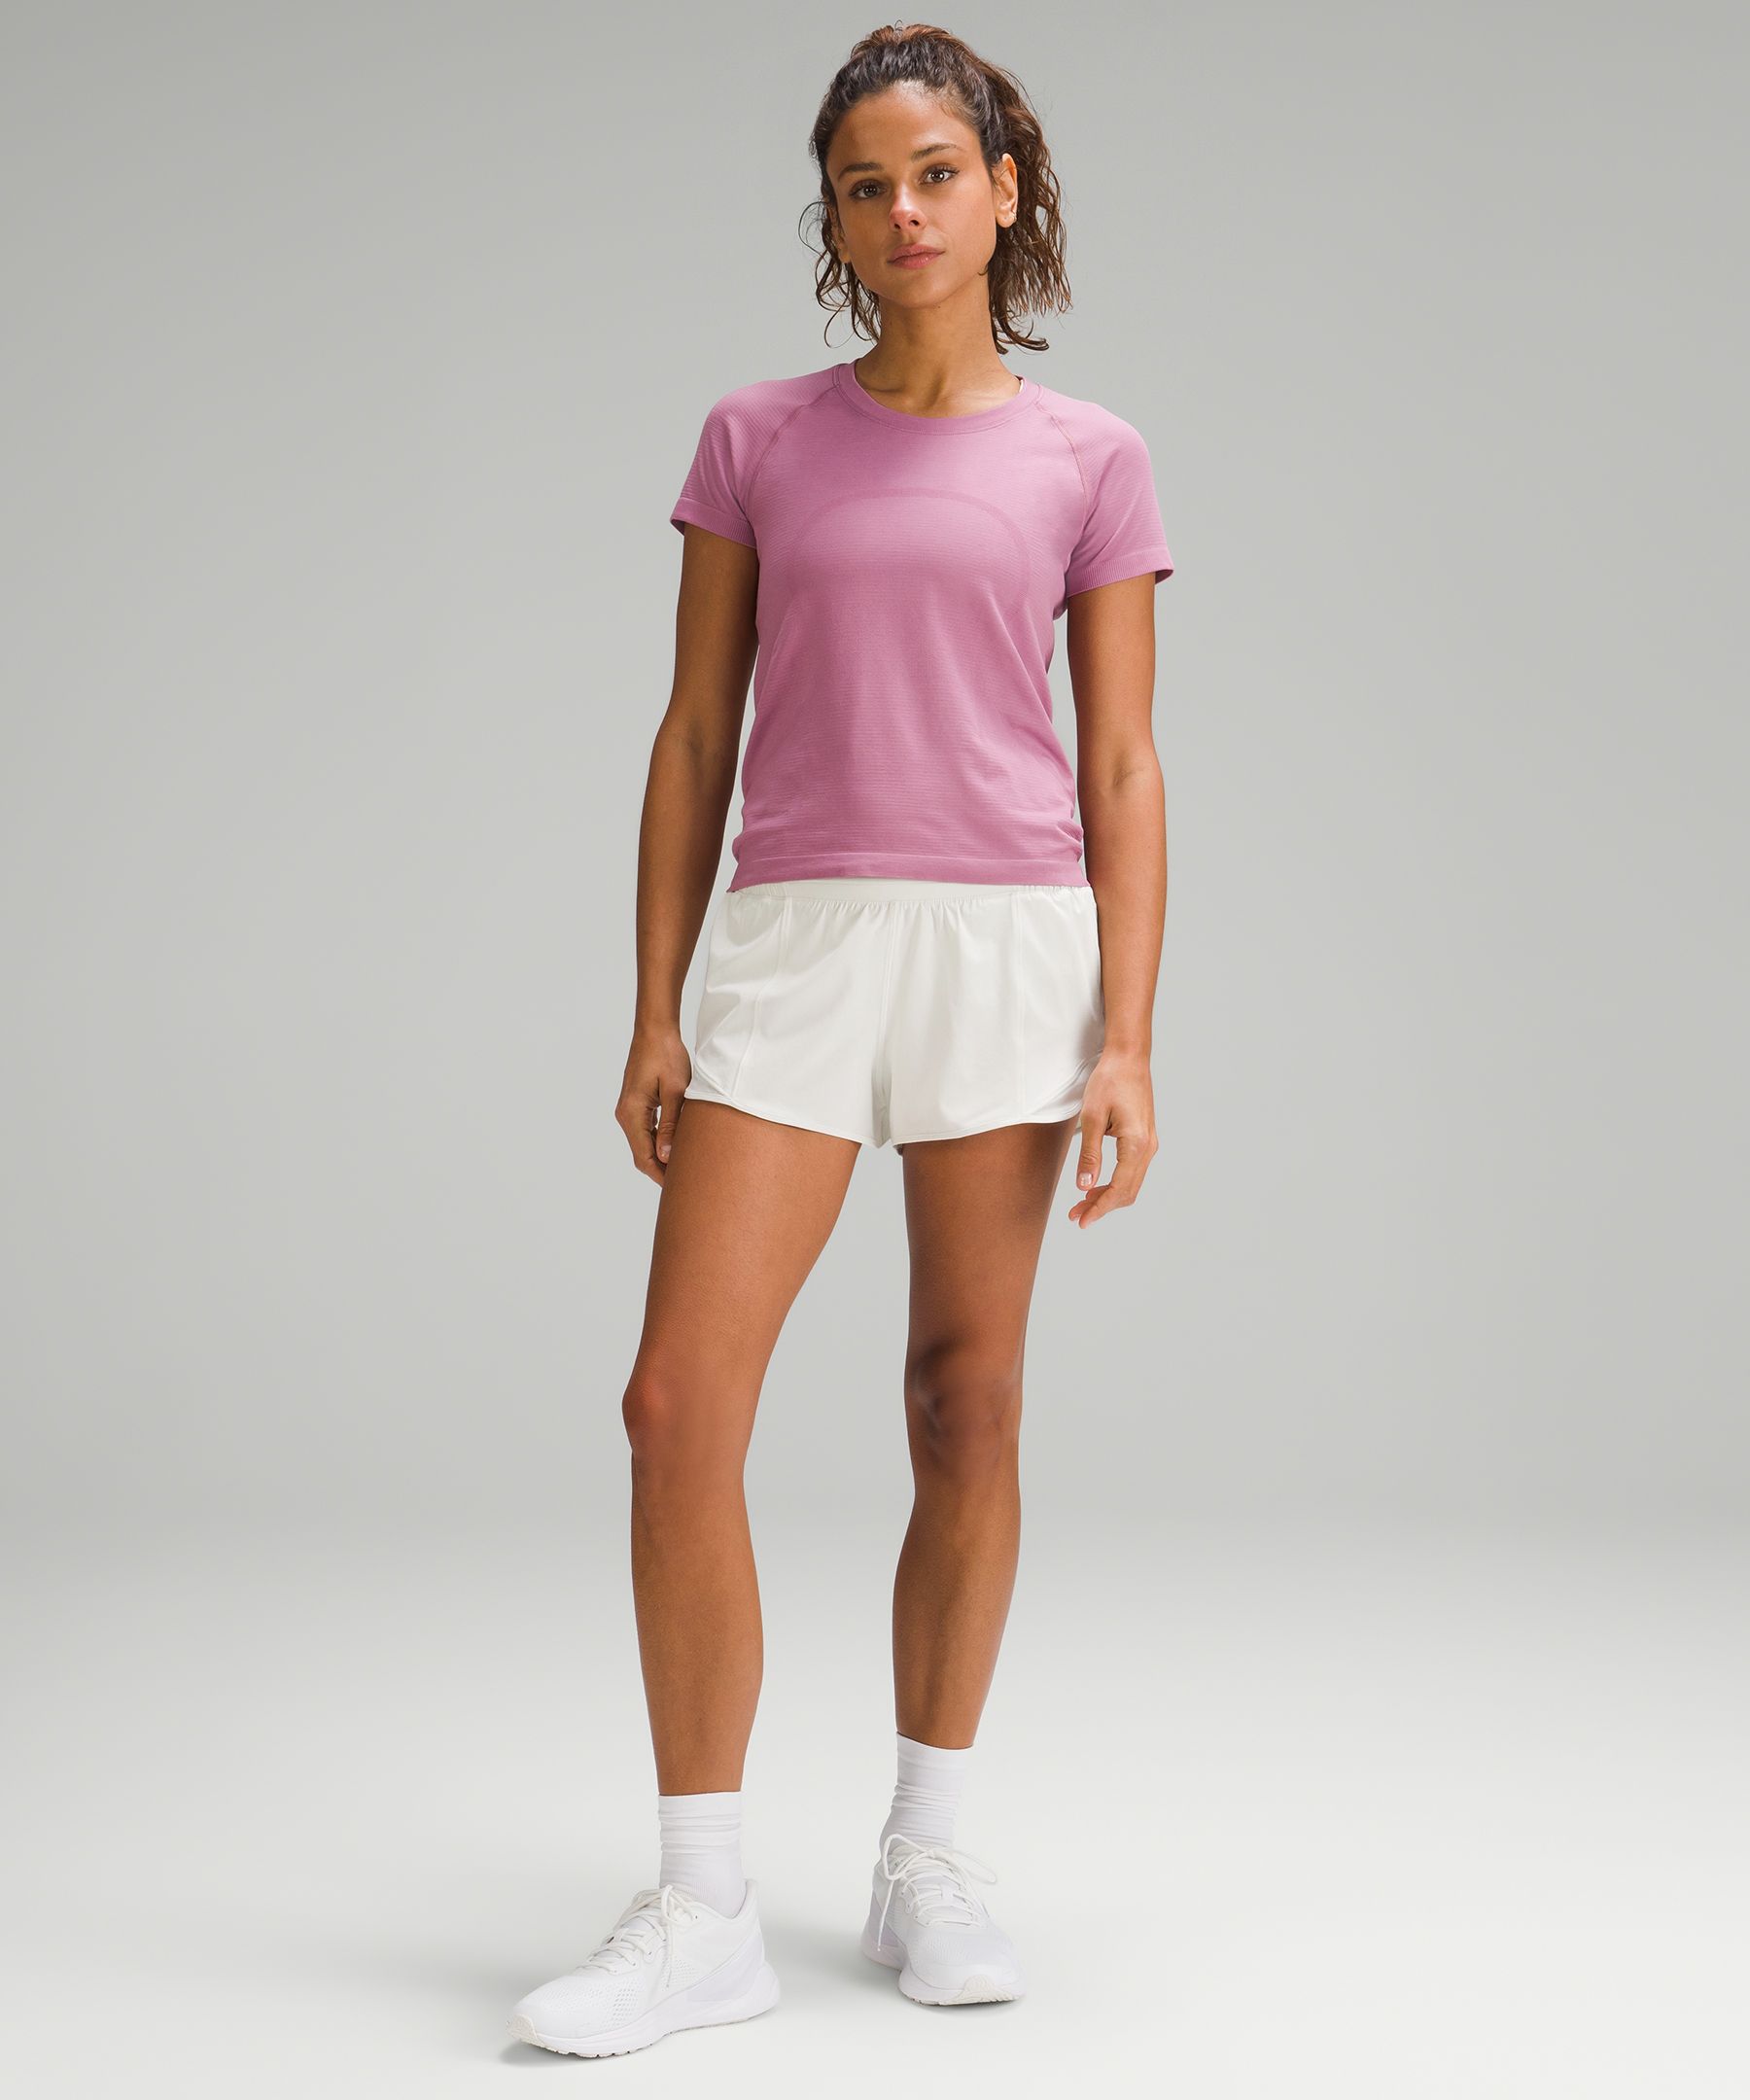 lululemon athletica, Shorts, Lululemon Hotty Hot Lowrise Lined Short 4  Pink Highlight